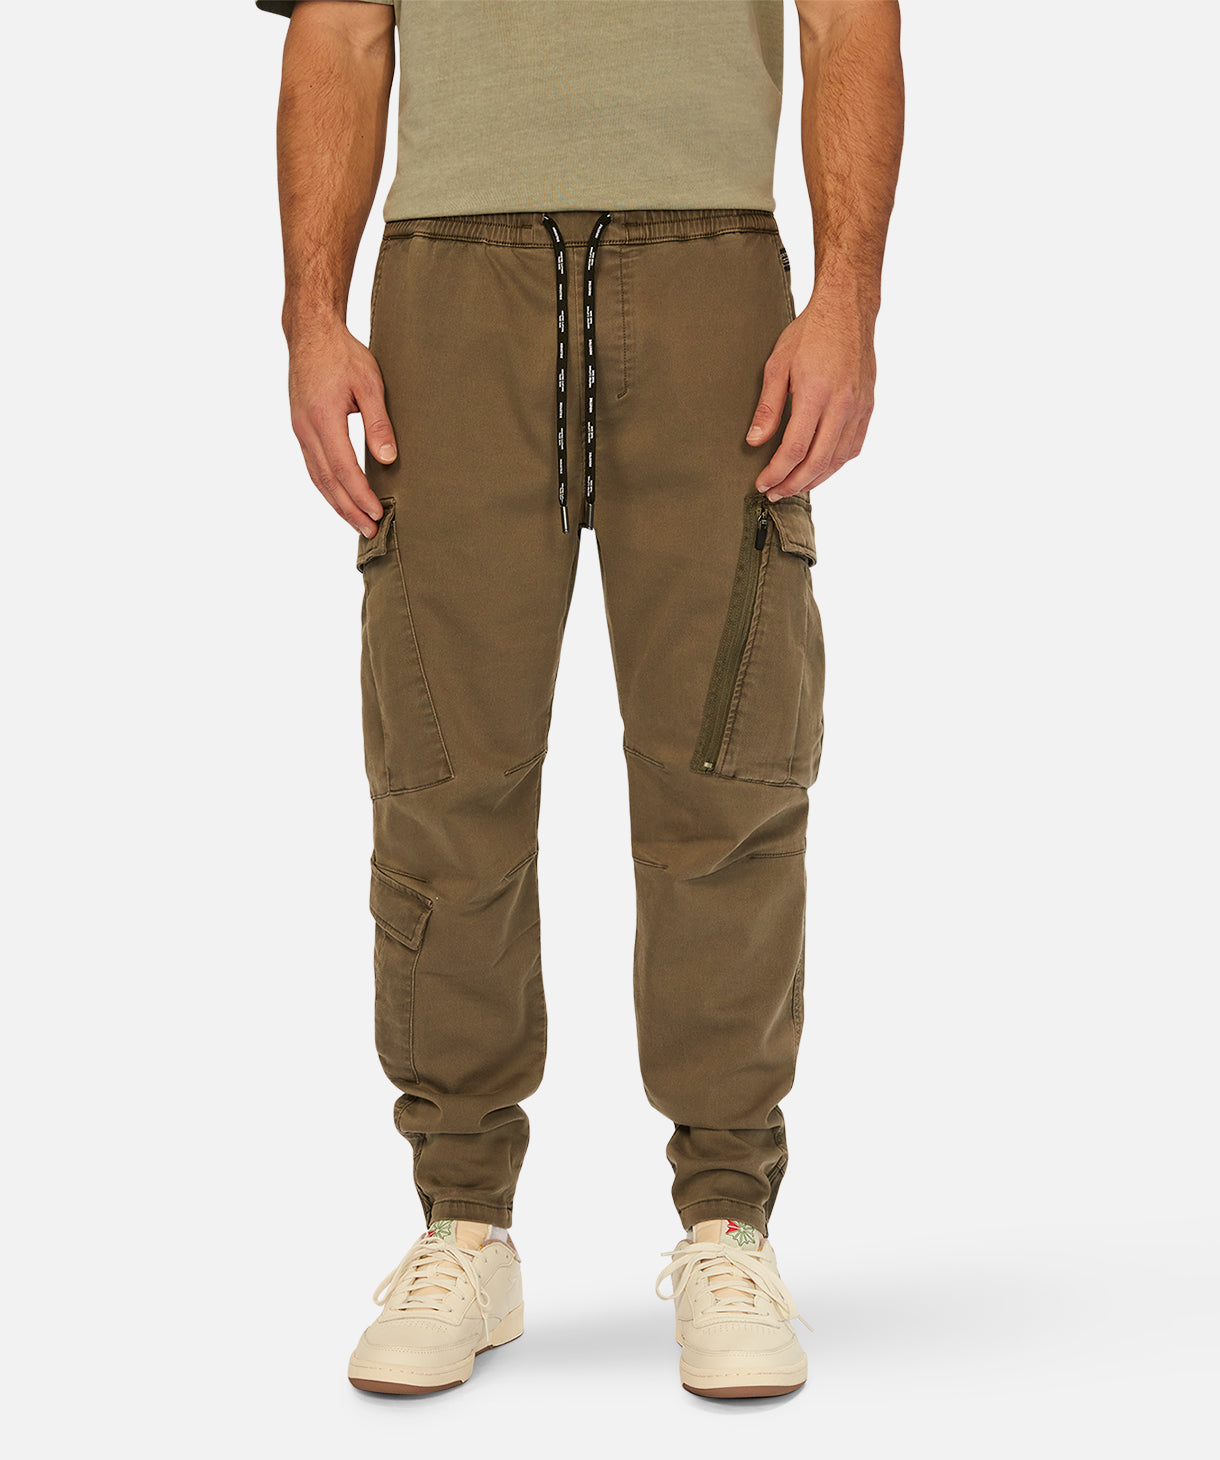 Men's Combat Pants, Shop Combat Trousers